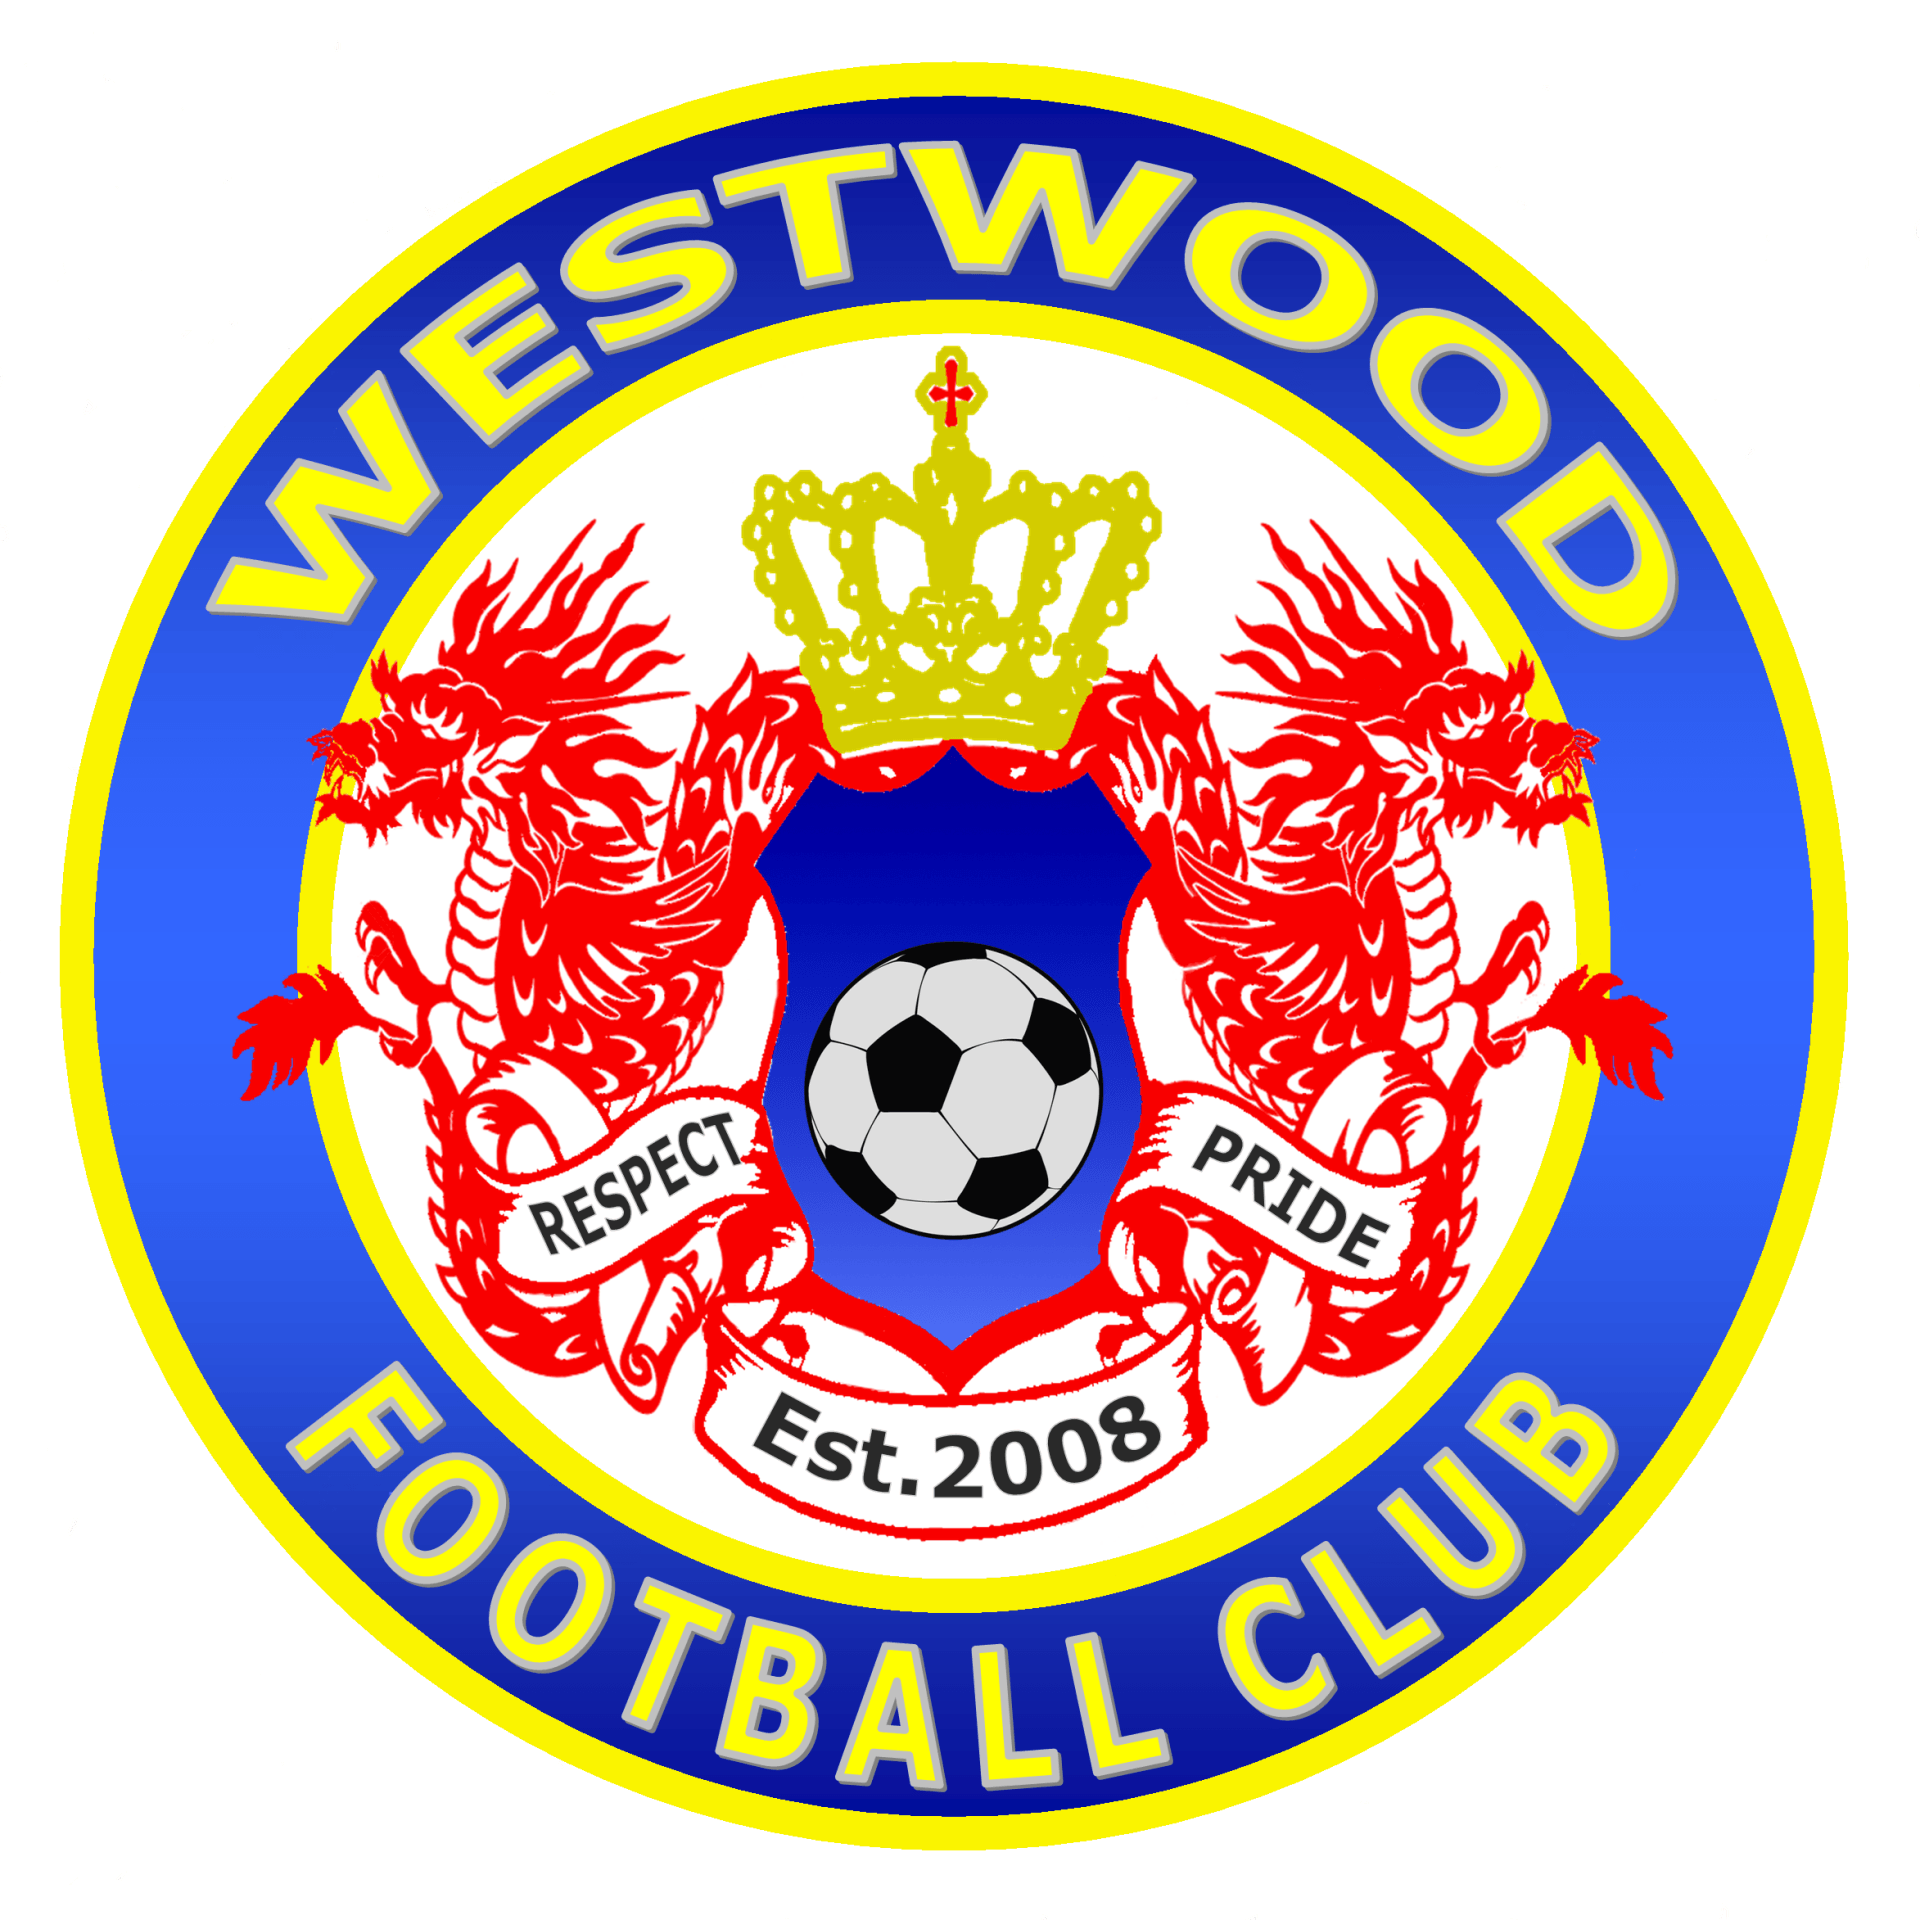 Westwood Soccer Club